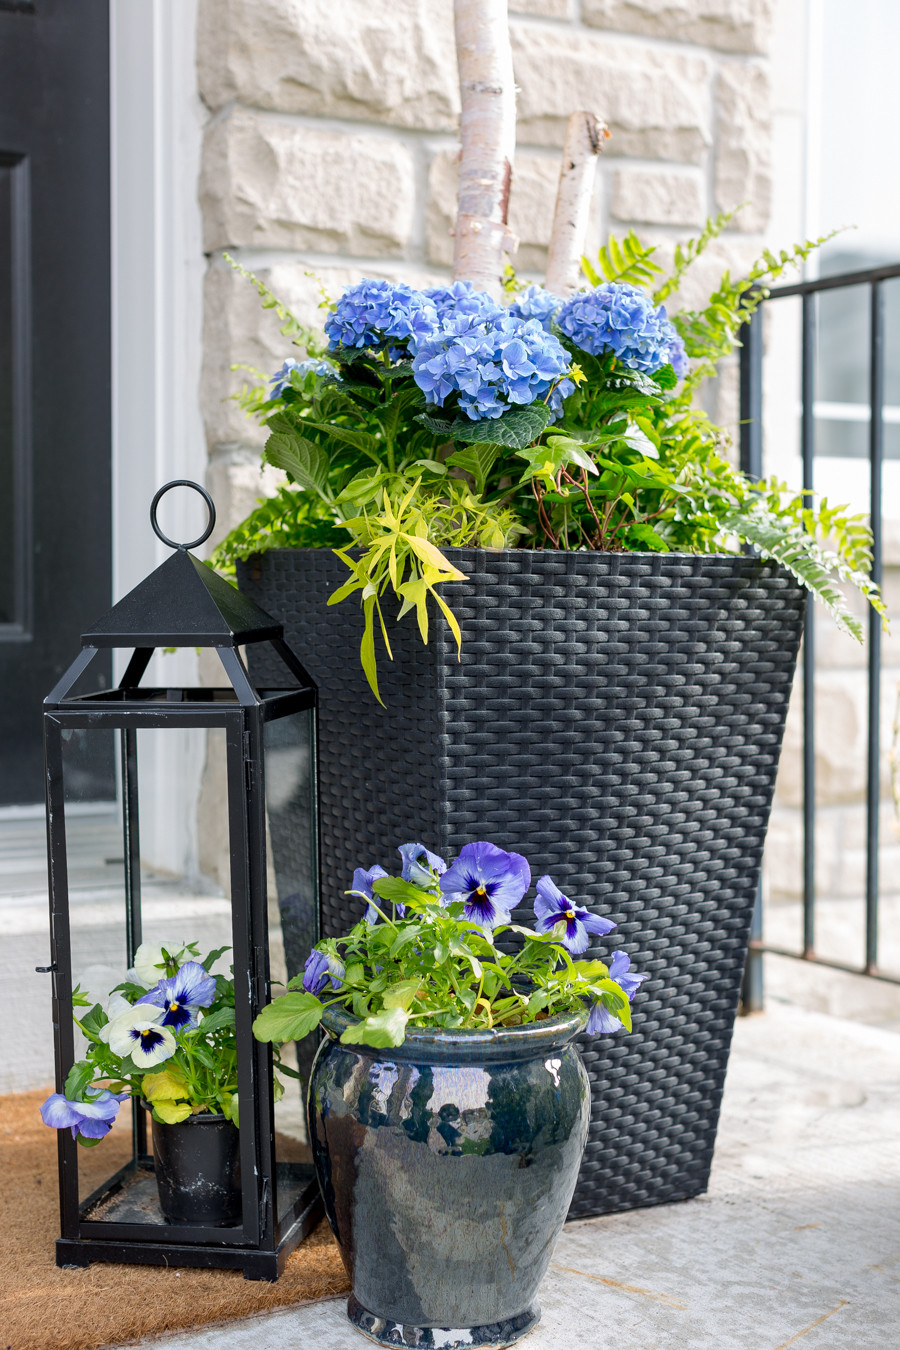 Best ideas about Front Porch Planters
. Save or Pin Porch Planter Ideas and Inspiration Maison de Pax Now.